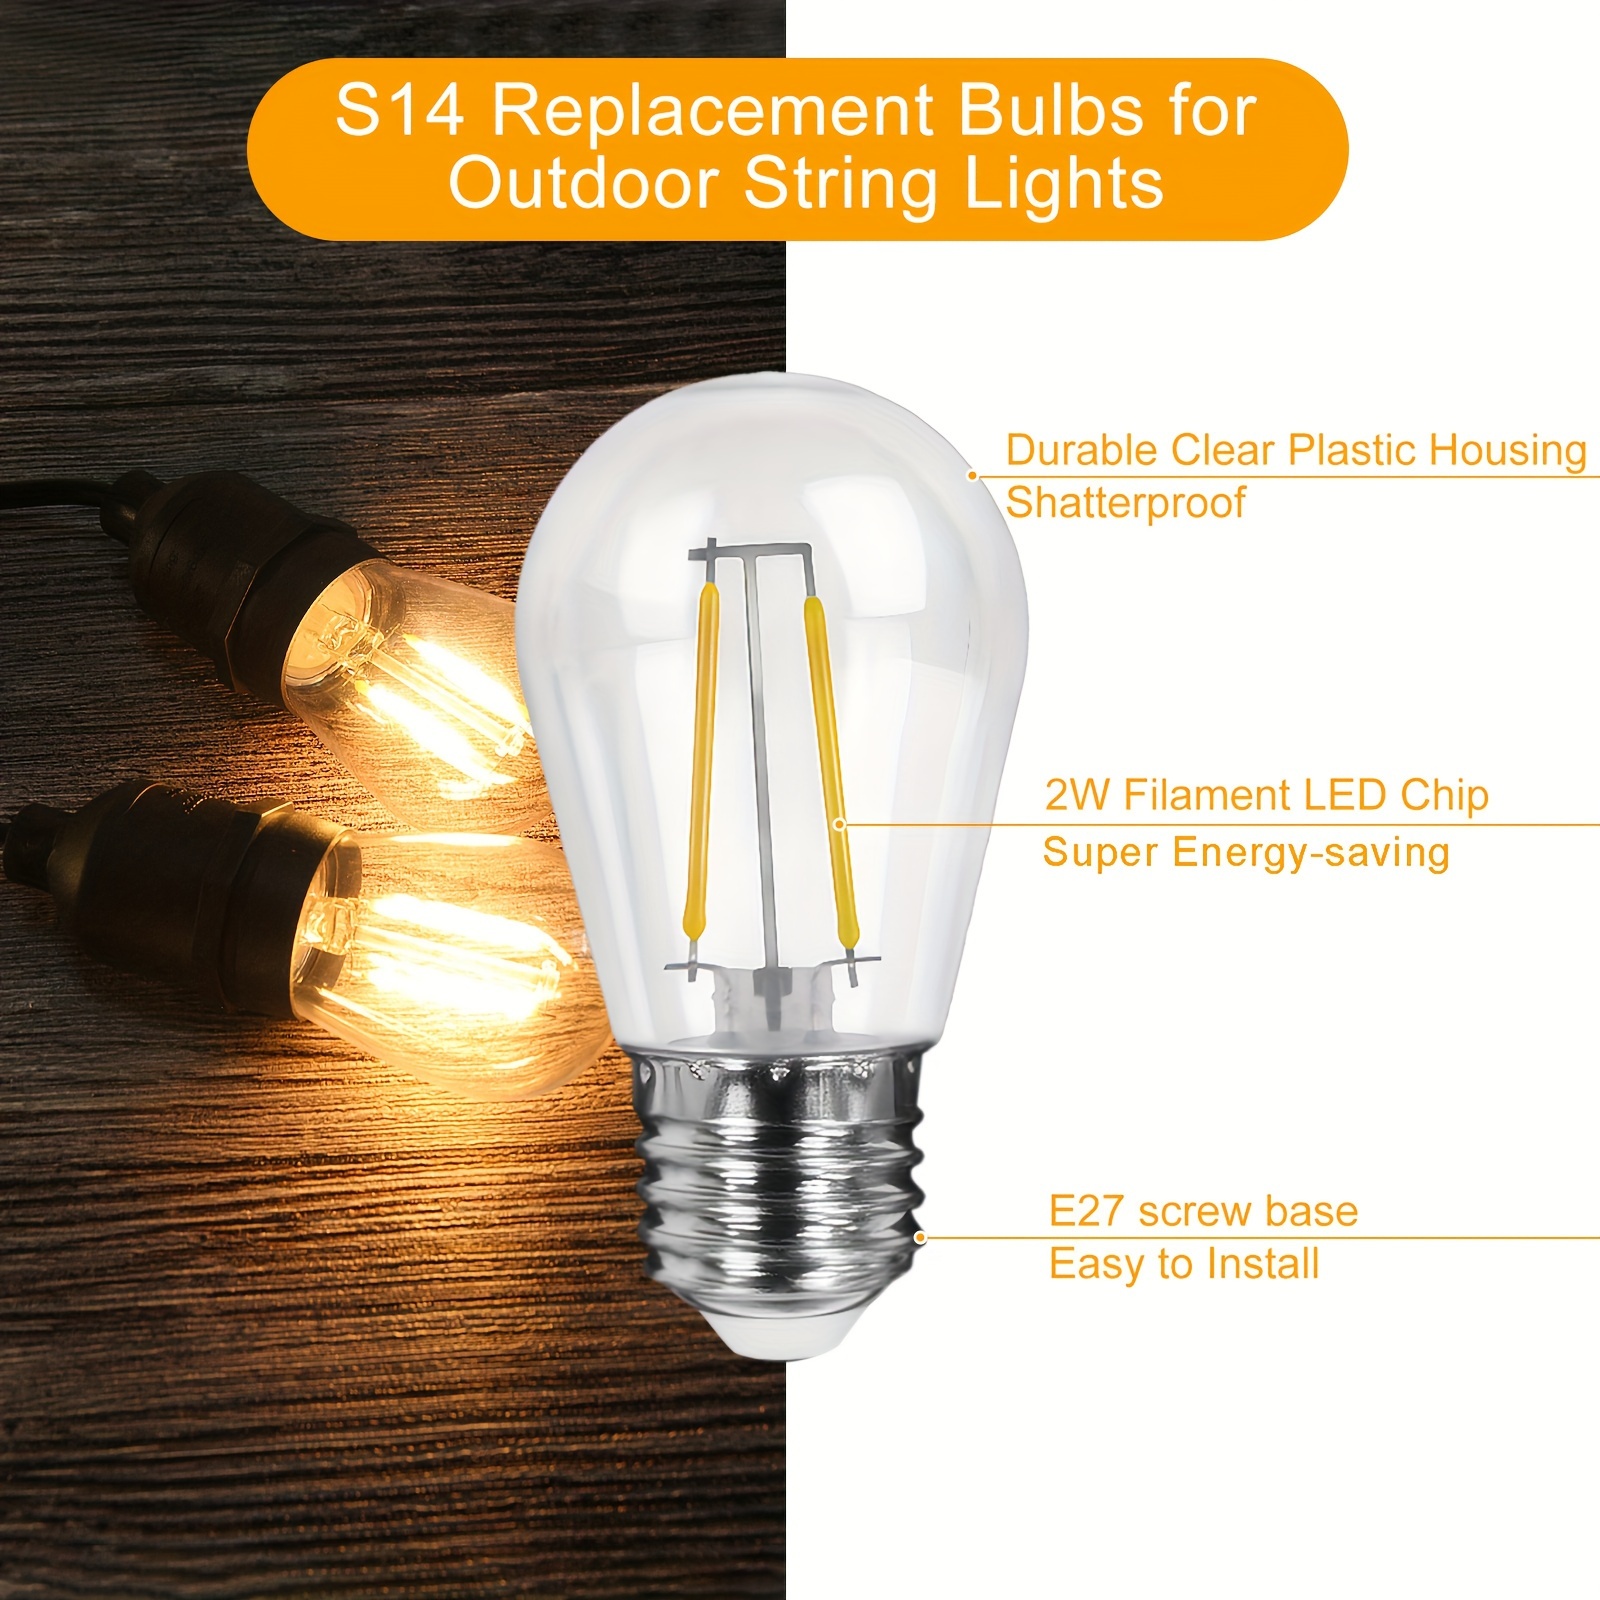 Philips Hue - Bombilla inteligente de filamento, E27, estándar, luz cálida  ajustable, 7 W, compatible con Alexa y Google Home, paquete de 1 bombilla  LED inteligente, blanca, 1 unidad (paquete de 1) : : Iluminación